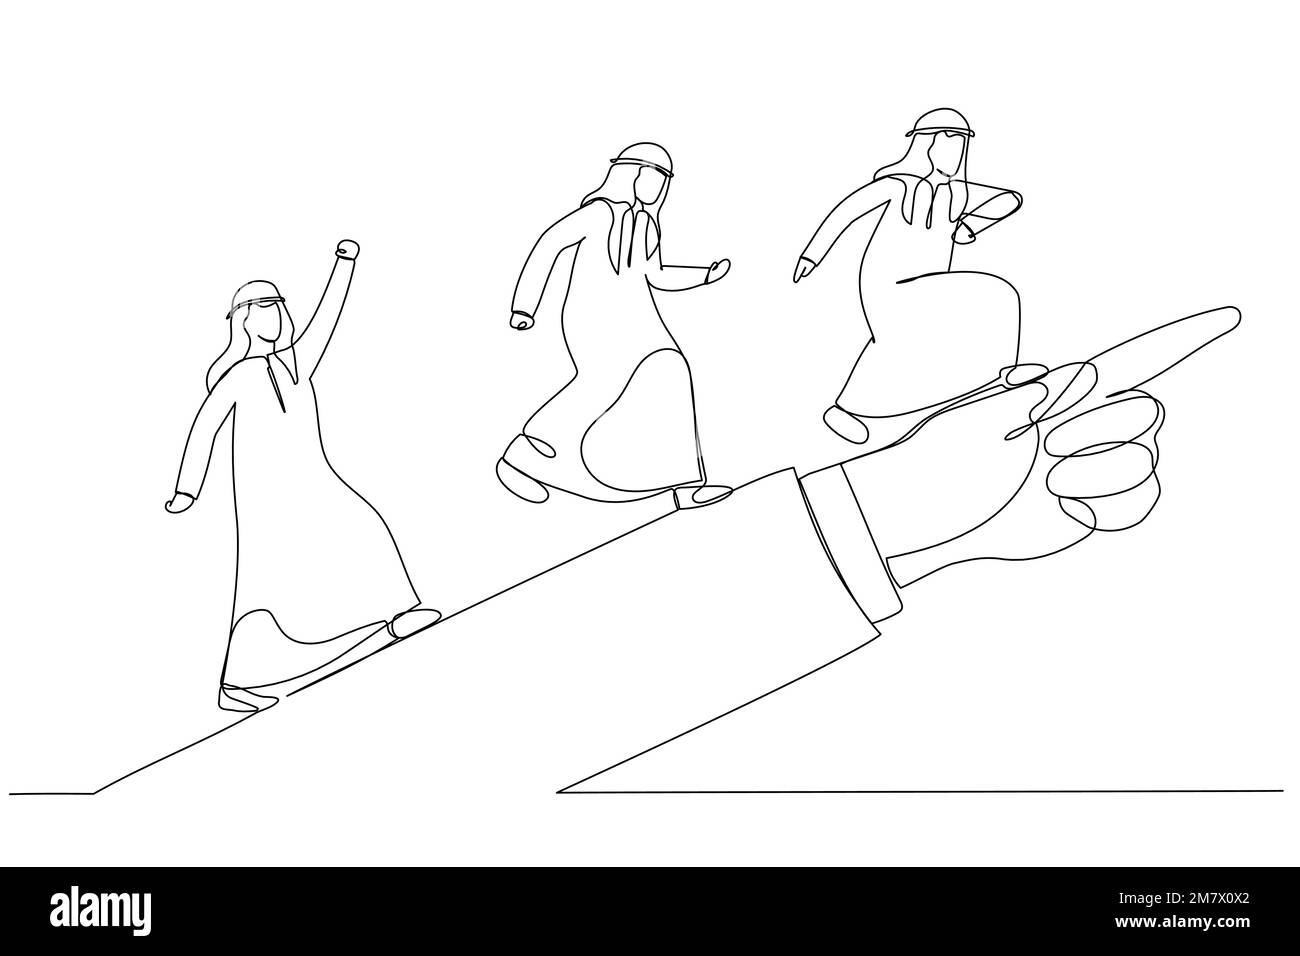 Illustration eines arabischen Mannes, der nach vorn rennt und nach Erfolg sucht, so wie es die riesige Hand des Anführers gezeigt hat. Metapher für richtungsweisende Führung. Ein konti Stock Vektor